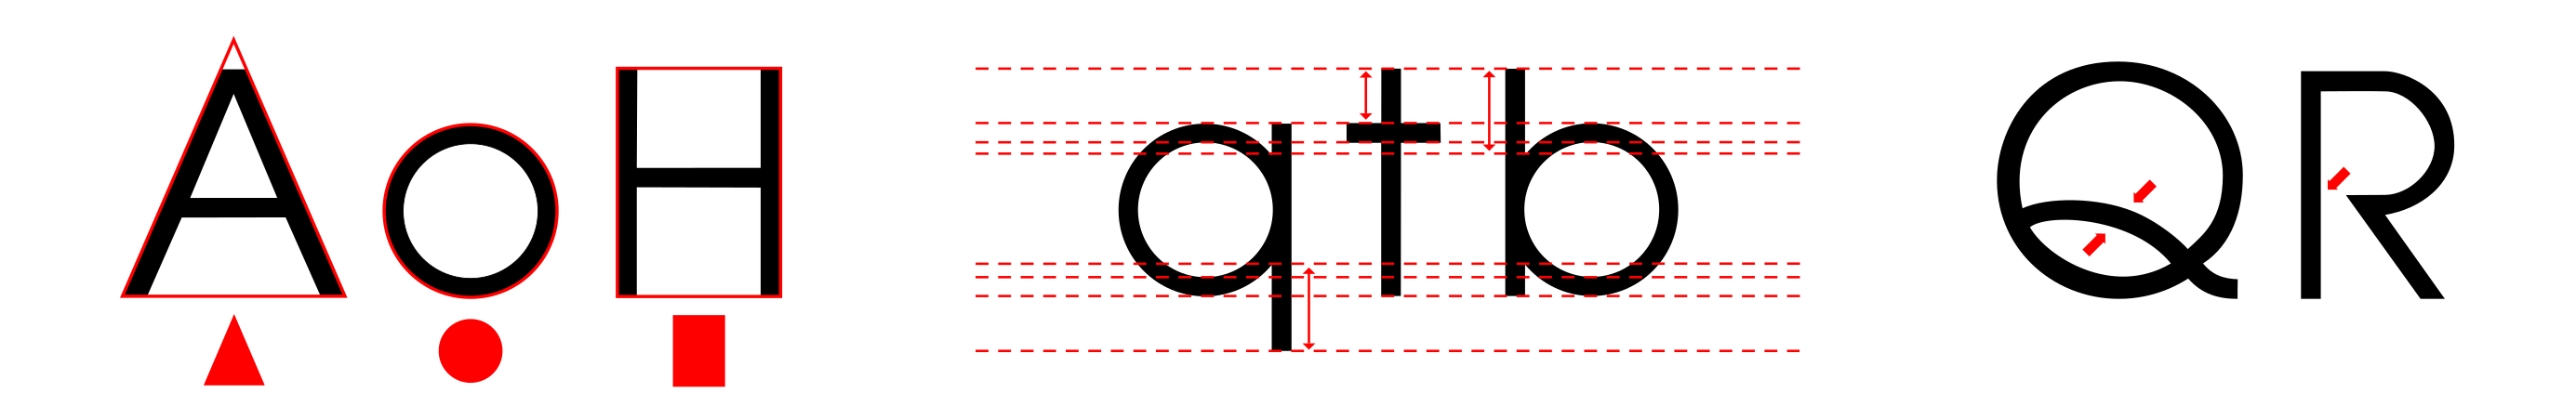 Avangarde Gothic typeface characterictics